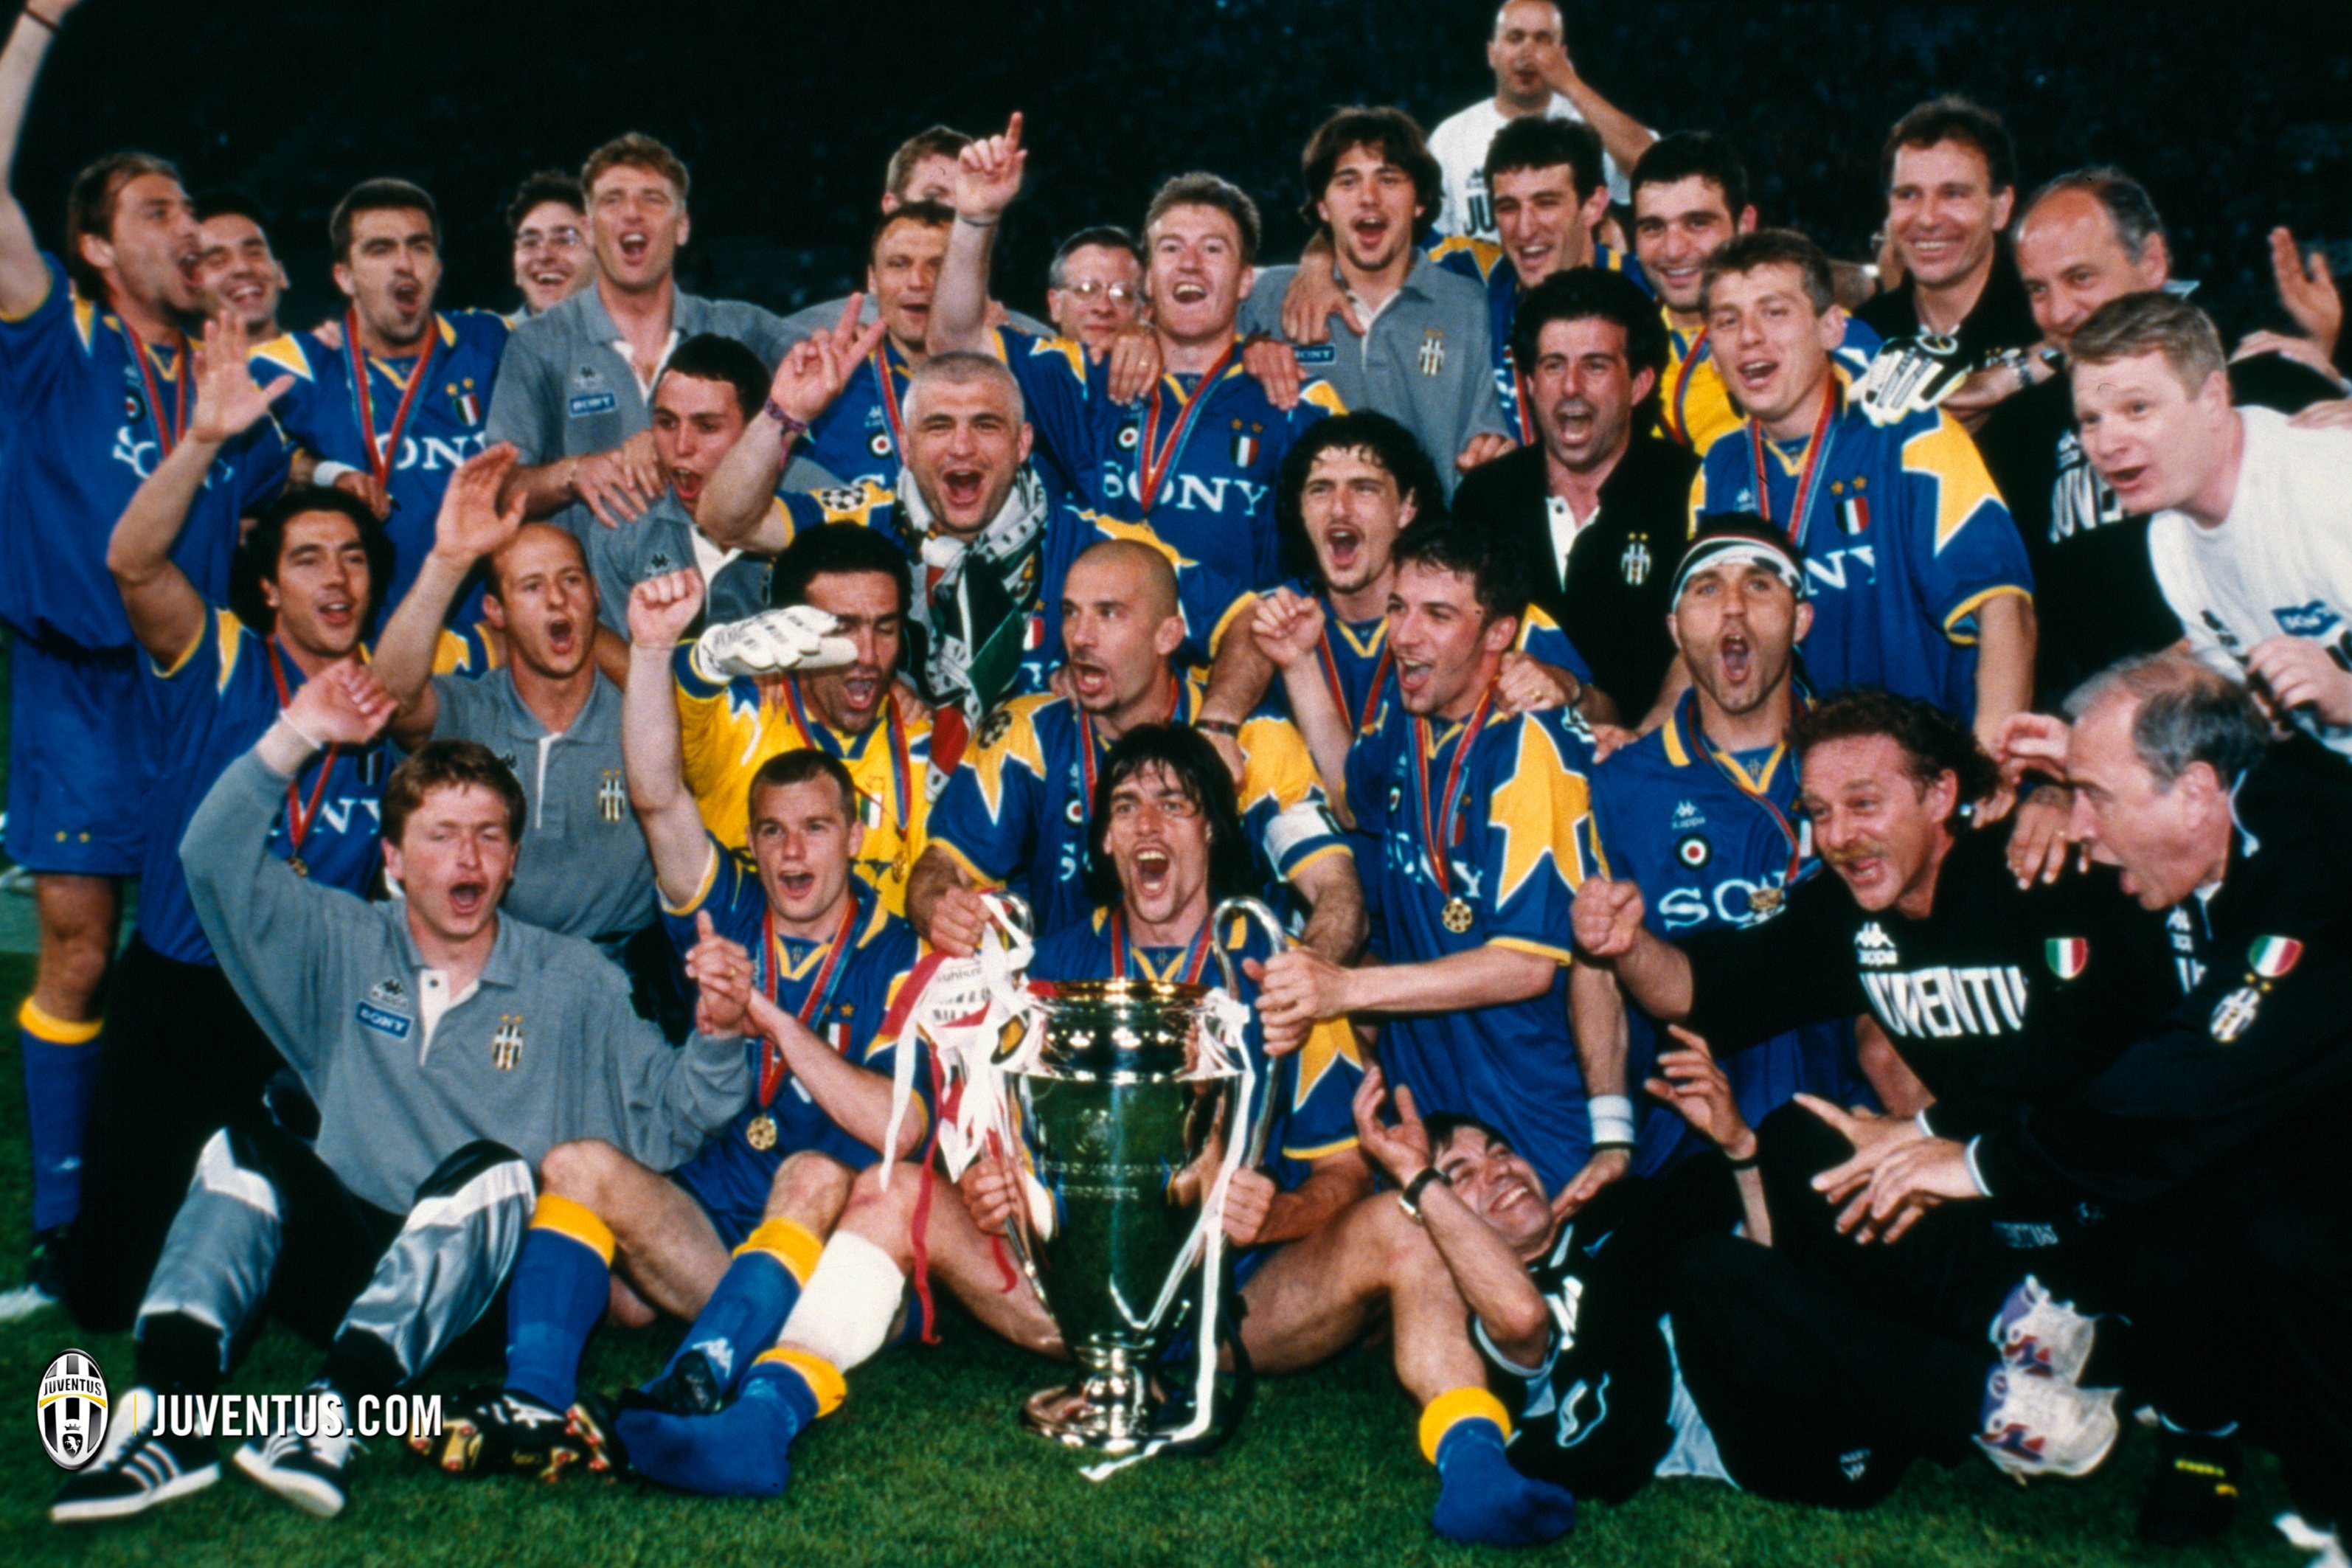 Juventus' Unforgettable 1996 Champions League Kit